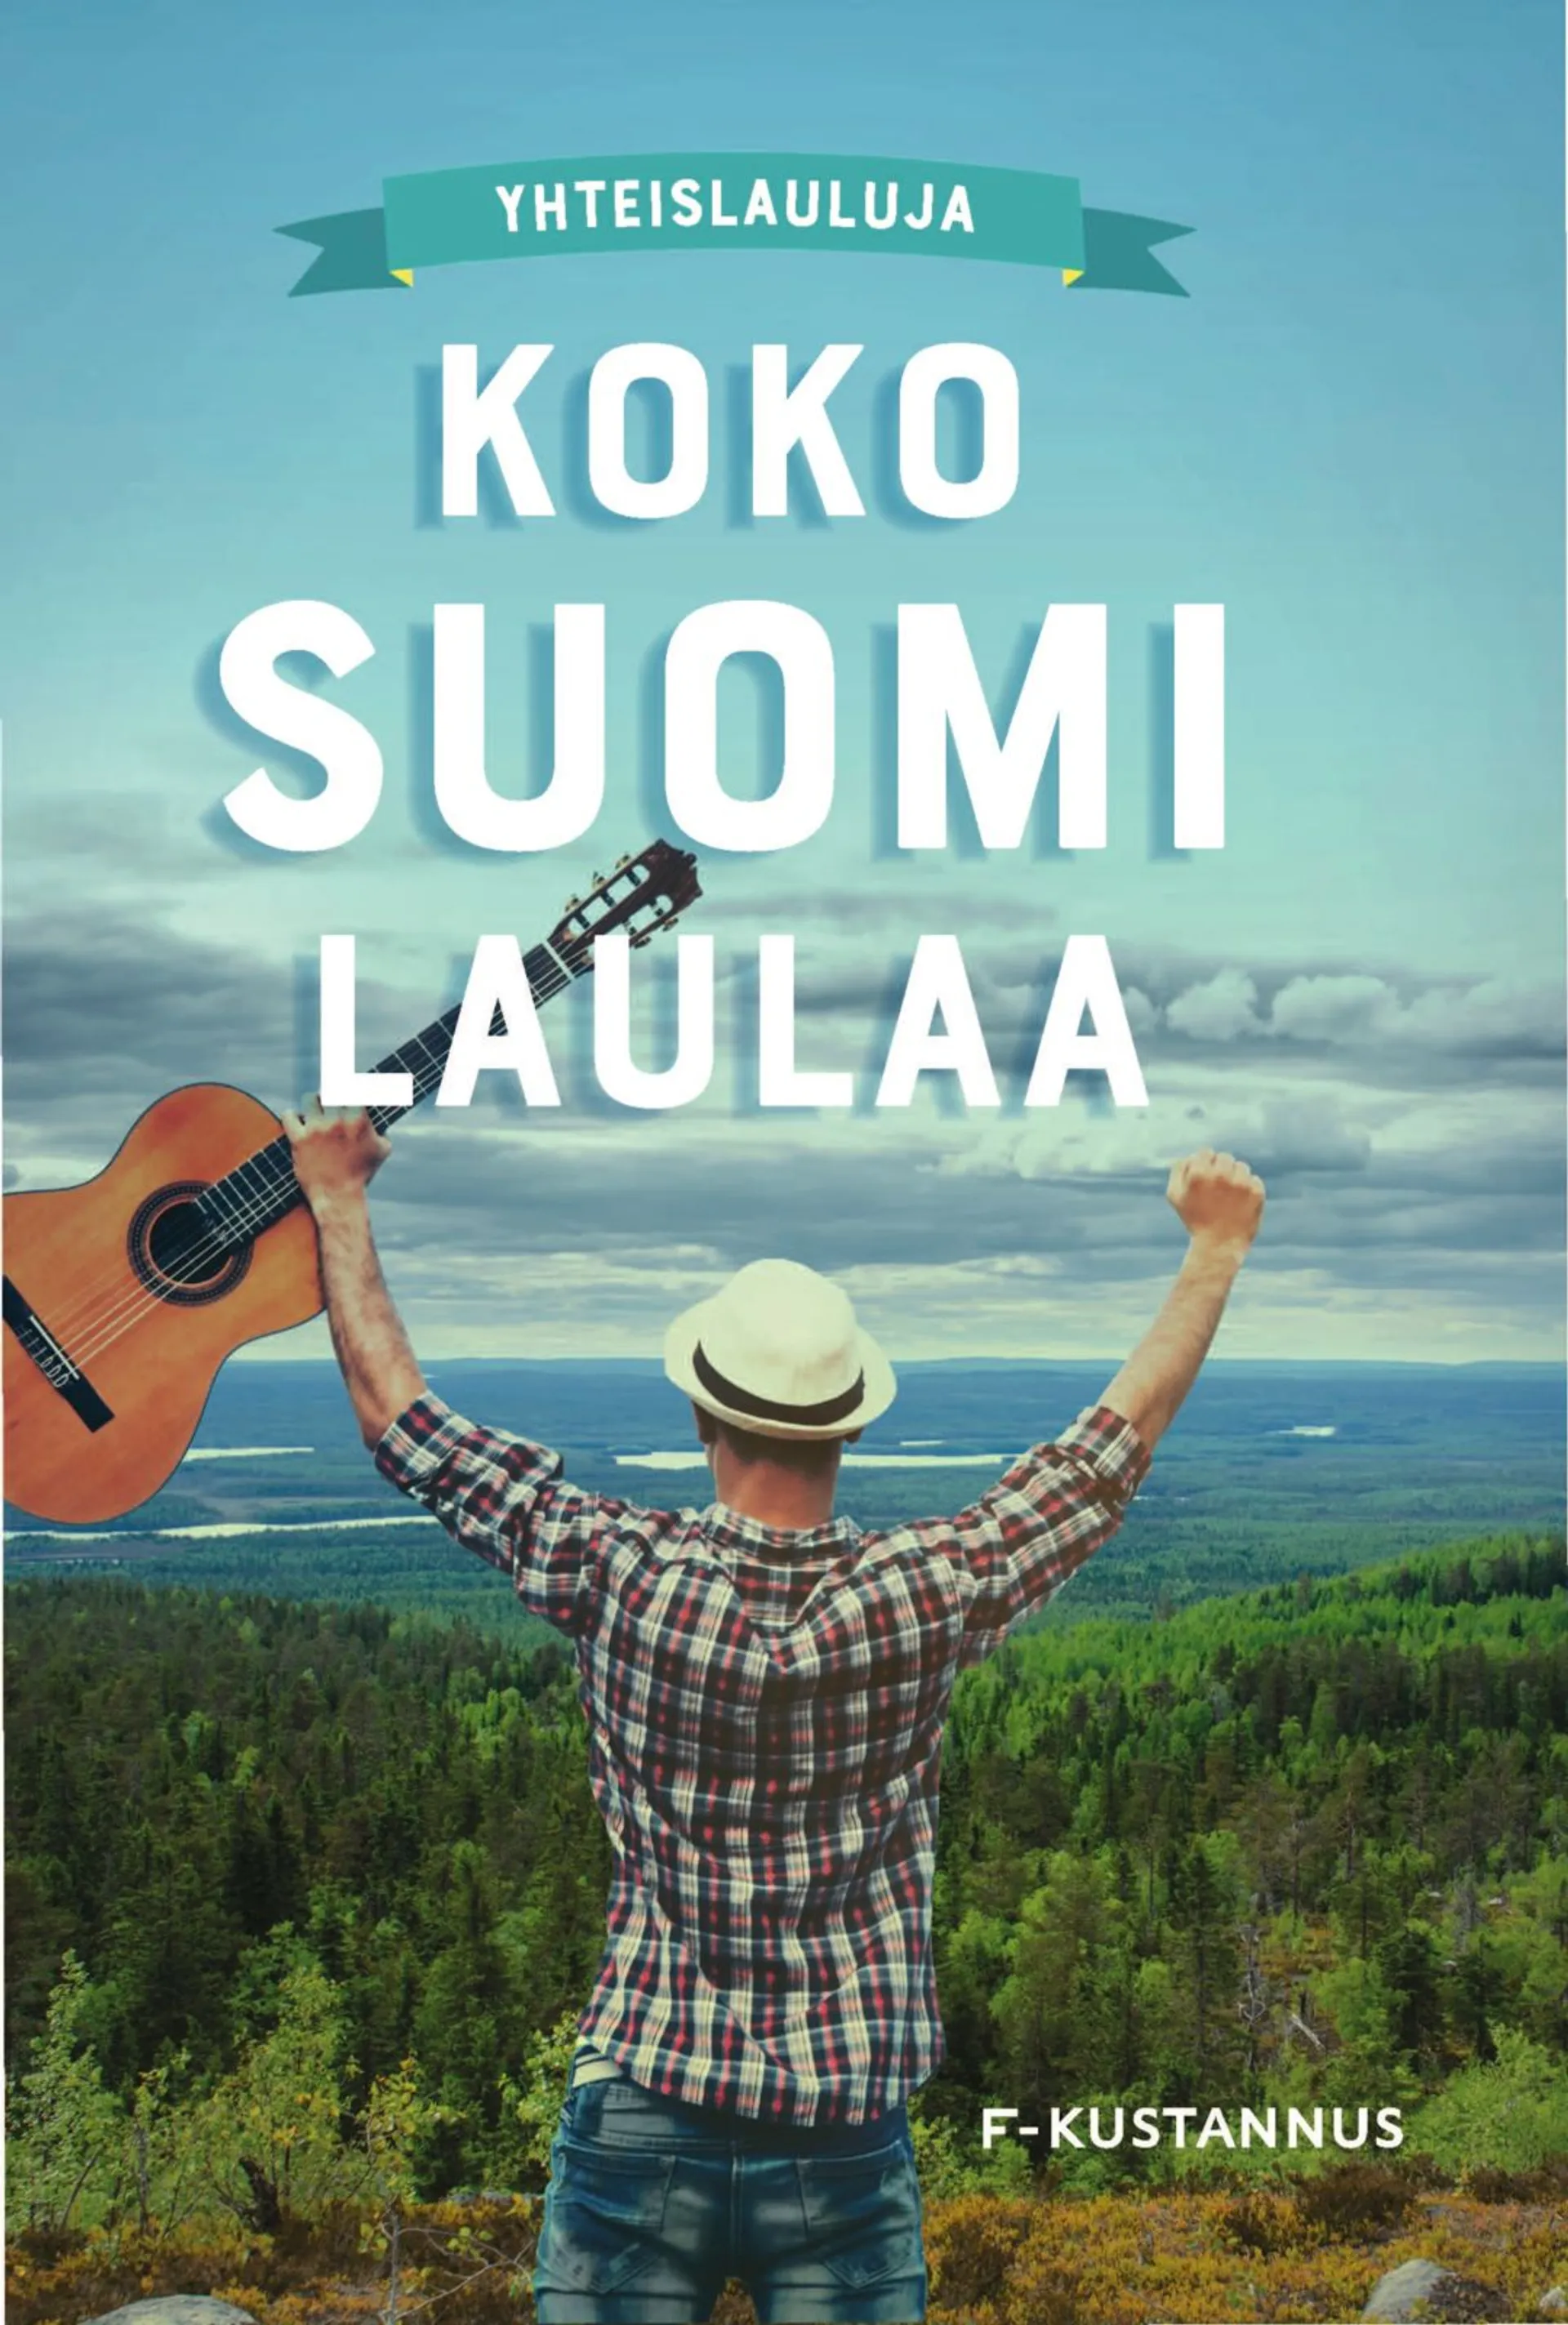 Leskelä, Koko Suomi laulaa – yhteislauluja